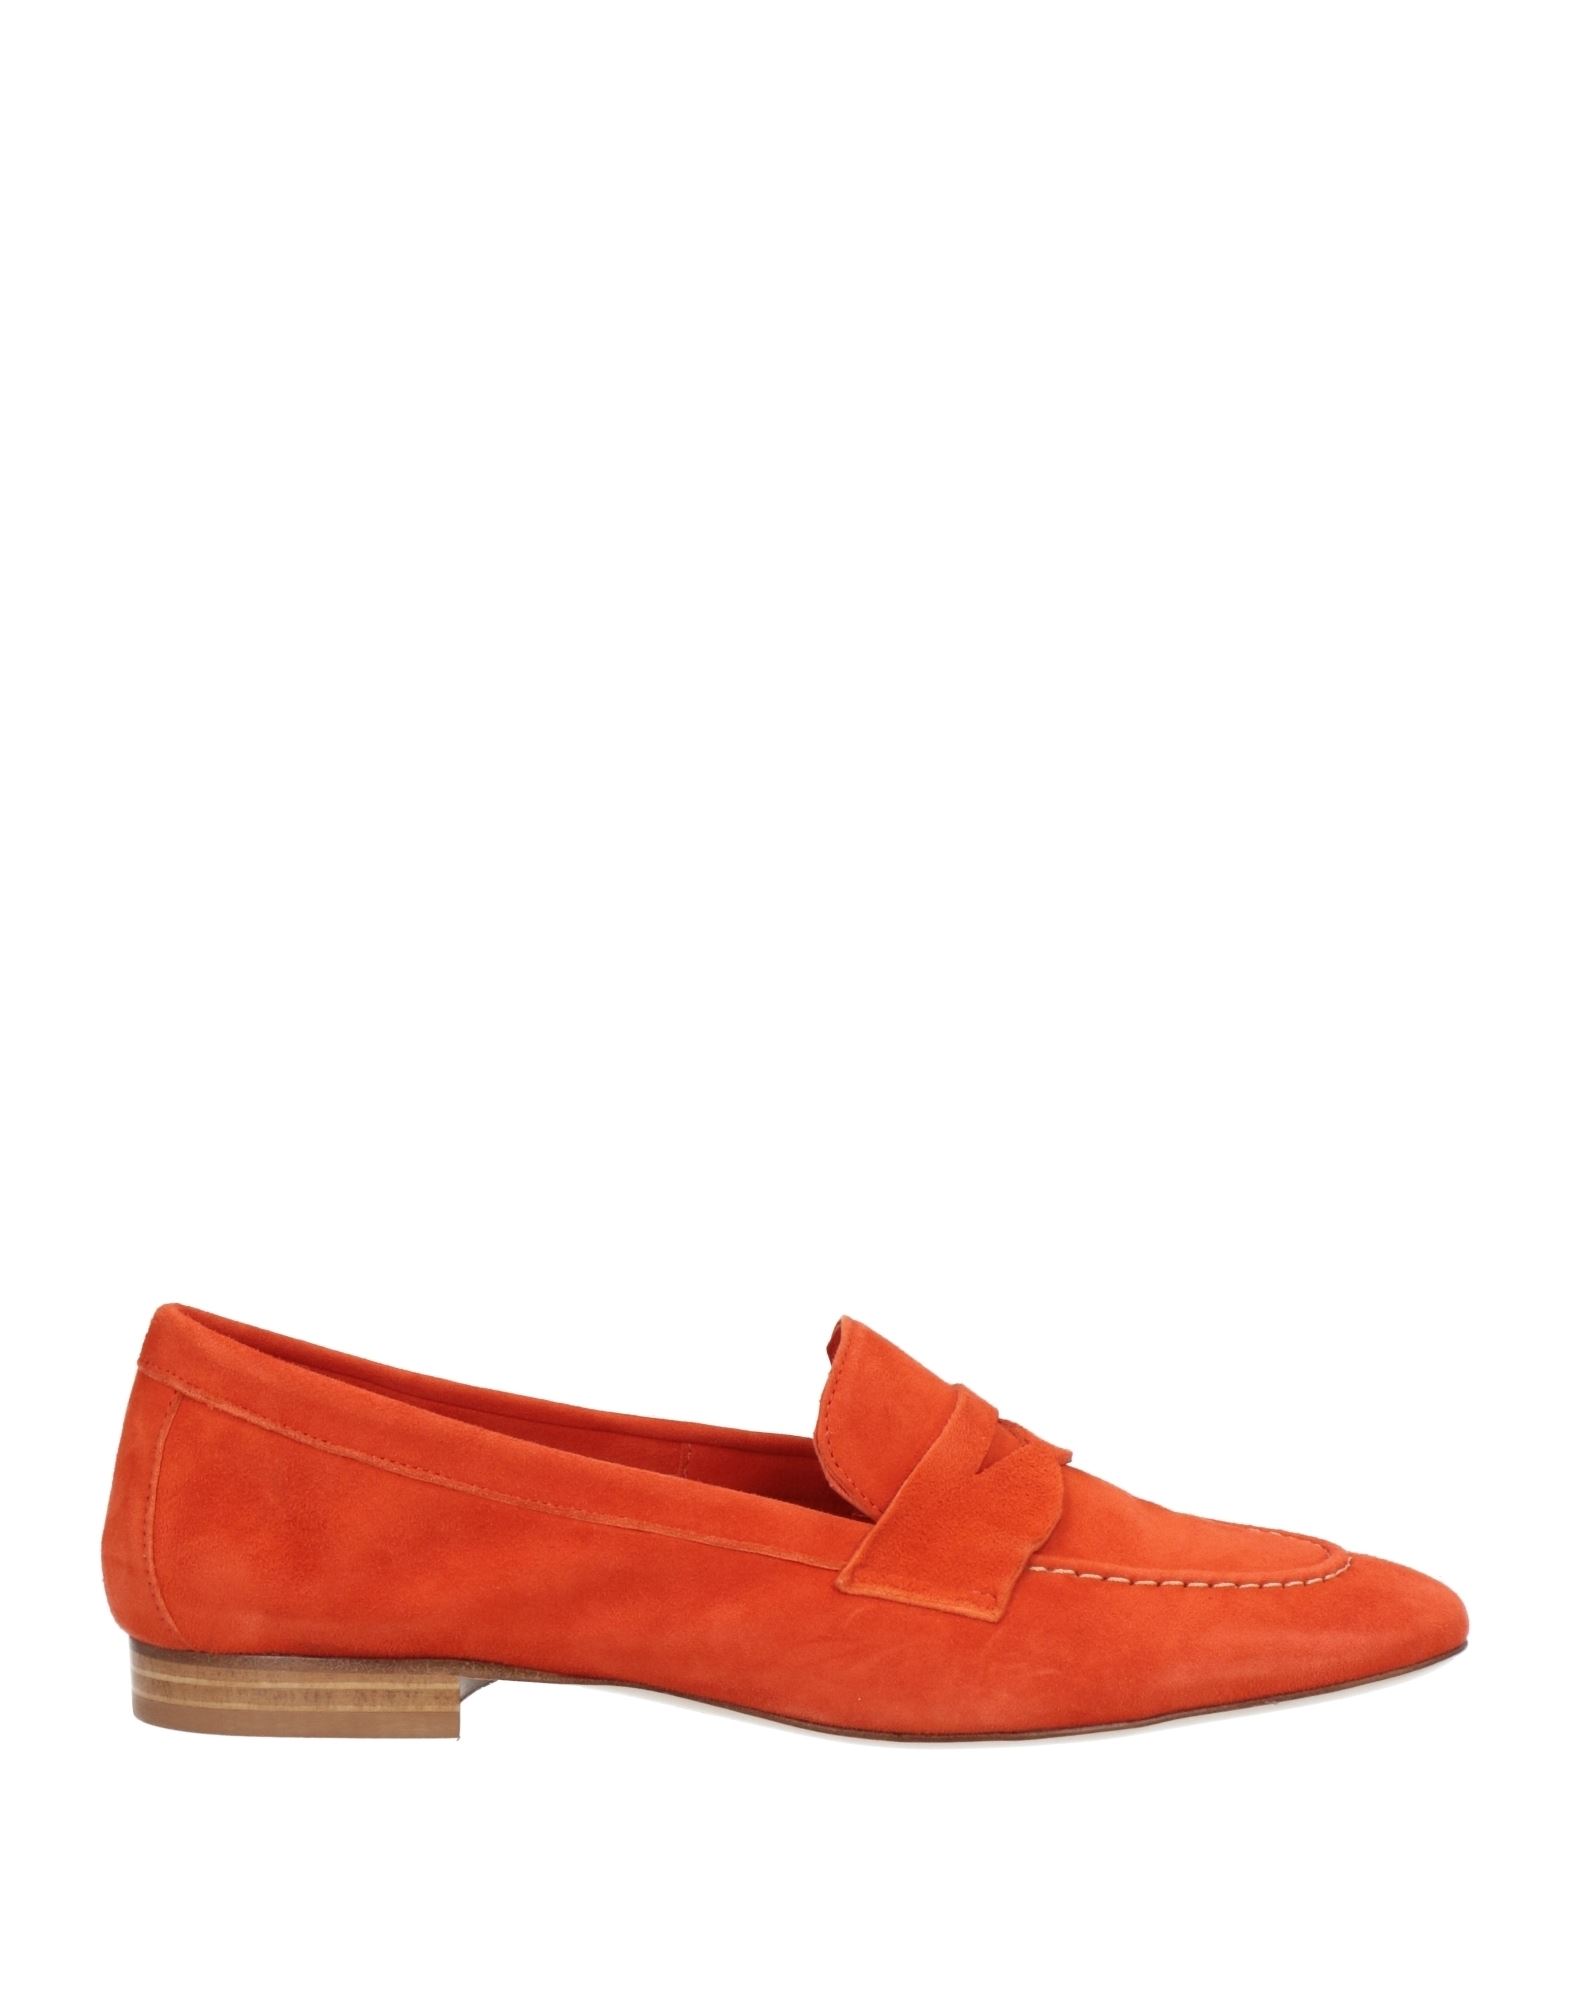 Carrie Latt Loafers In Orange